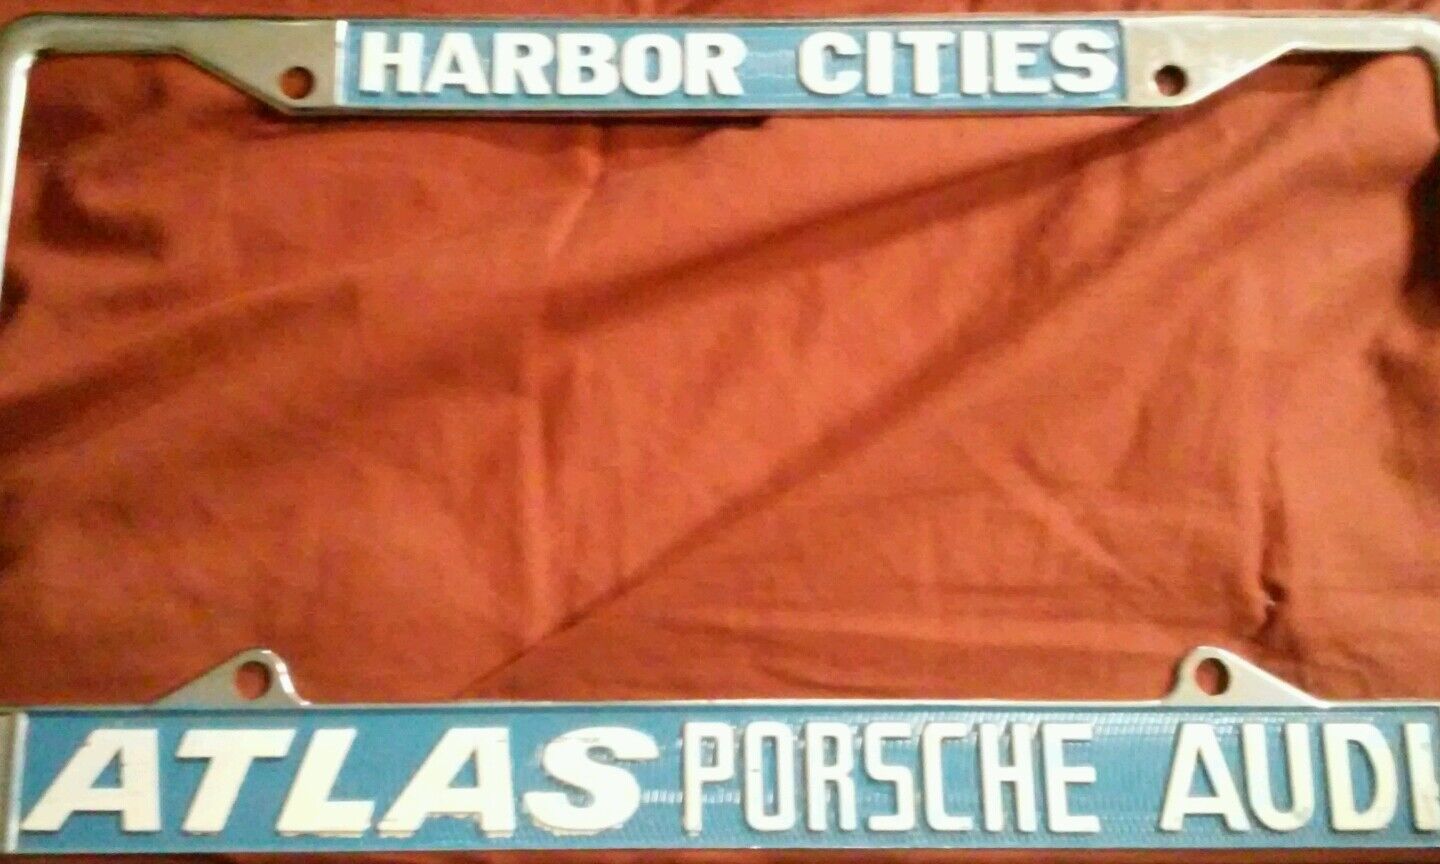 NOS Atlas Porsche Audi Harbor Cities Rare License Plate Frame